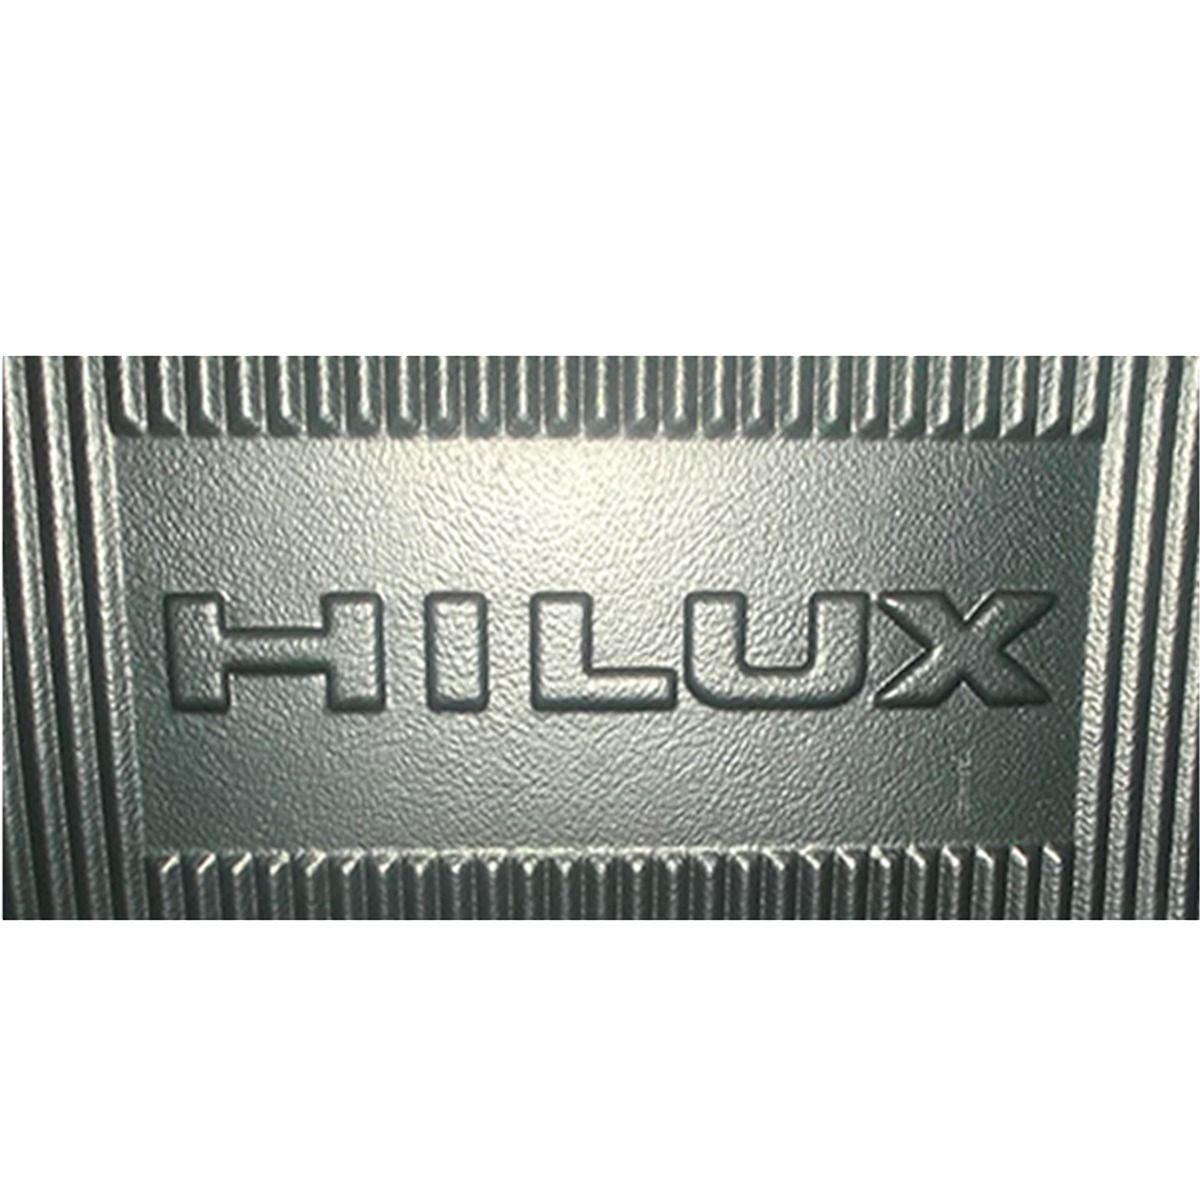 Pendaliner Logo - Bedliner Pendaliner Hilux Doble Cabina 16-19 Con Logo Hilux ...